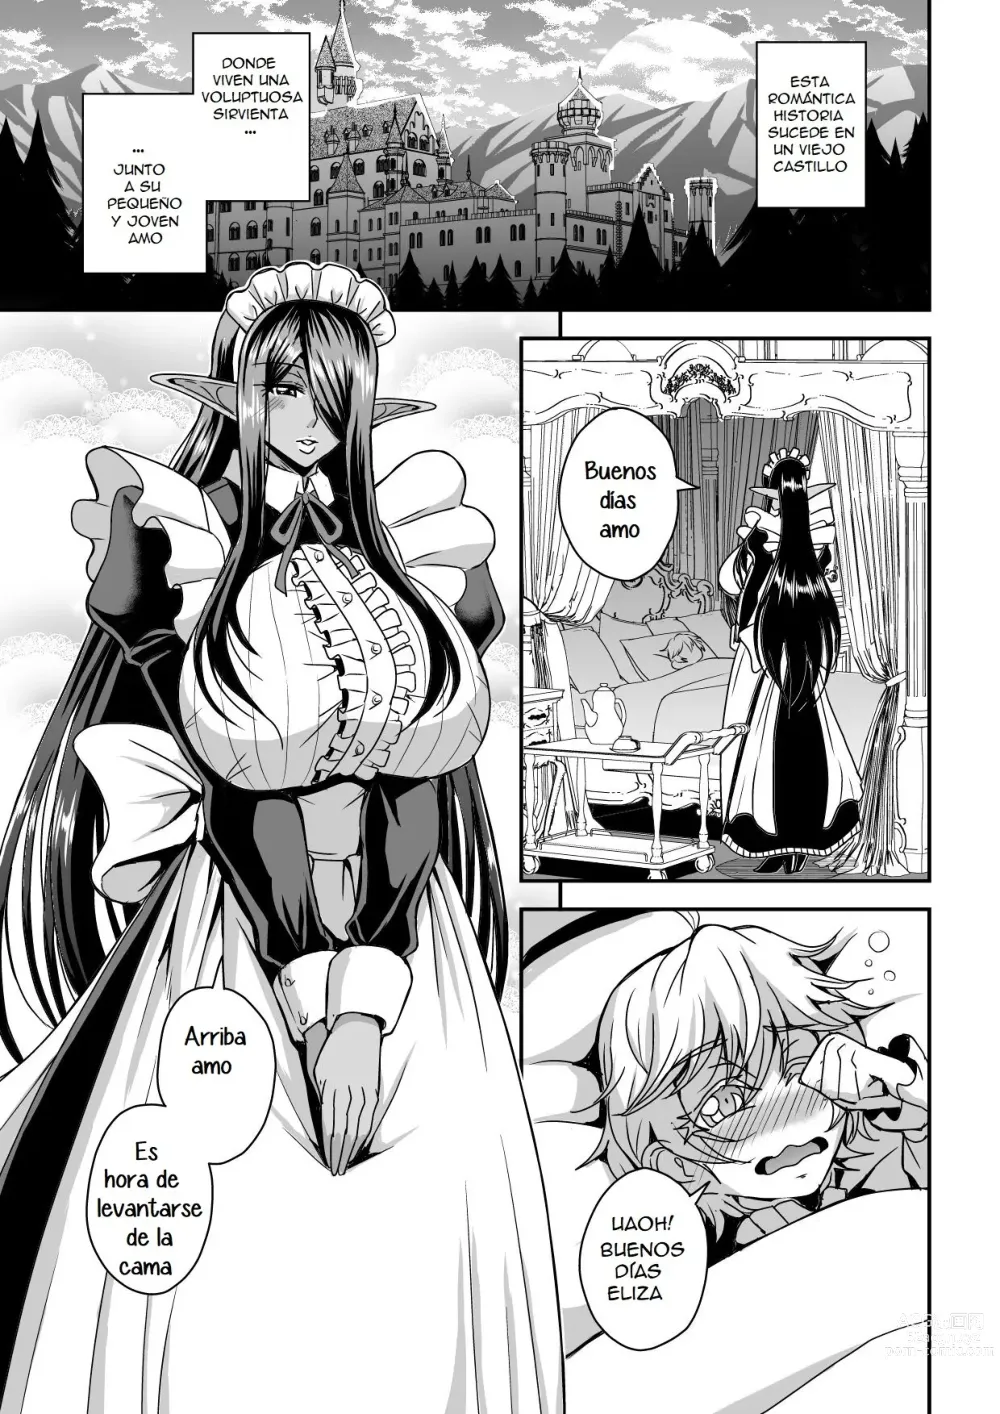 Page 2 of doujinshi Destruire mil mundos con tal de ir a la cama con mi señor una vez mas